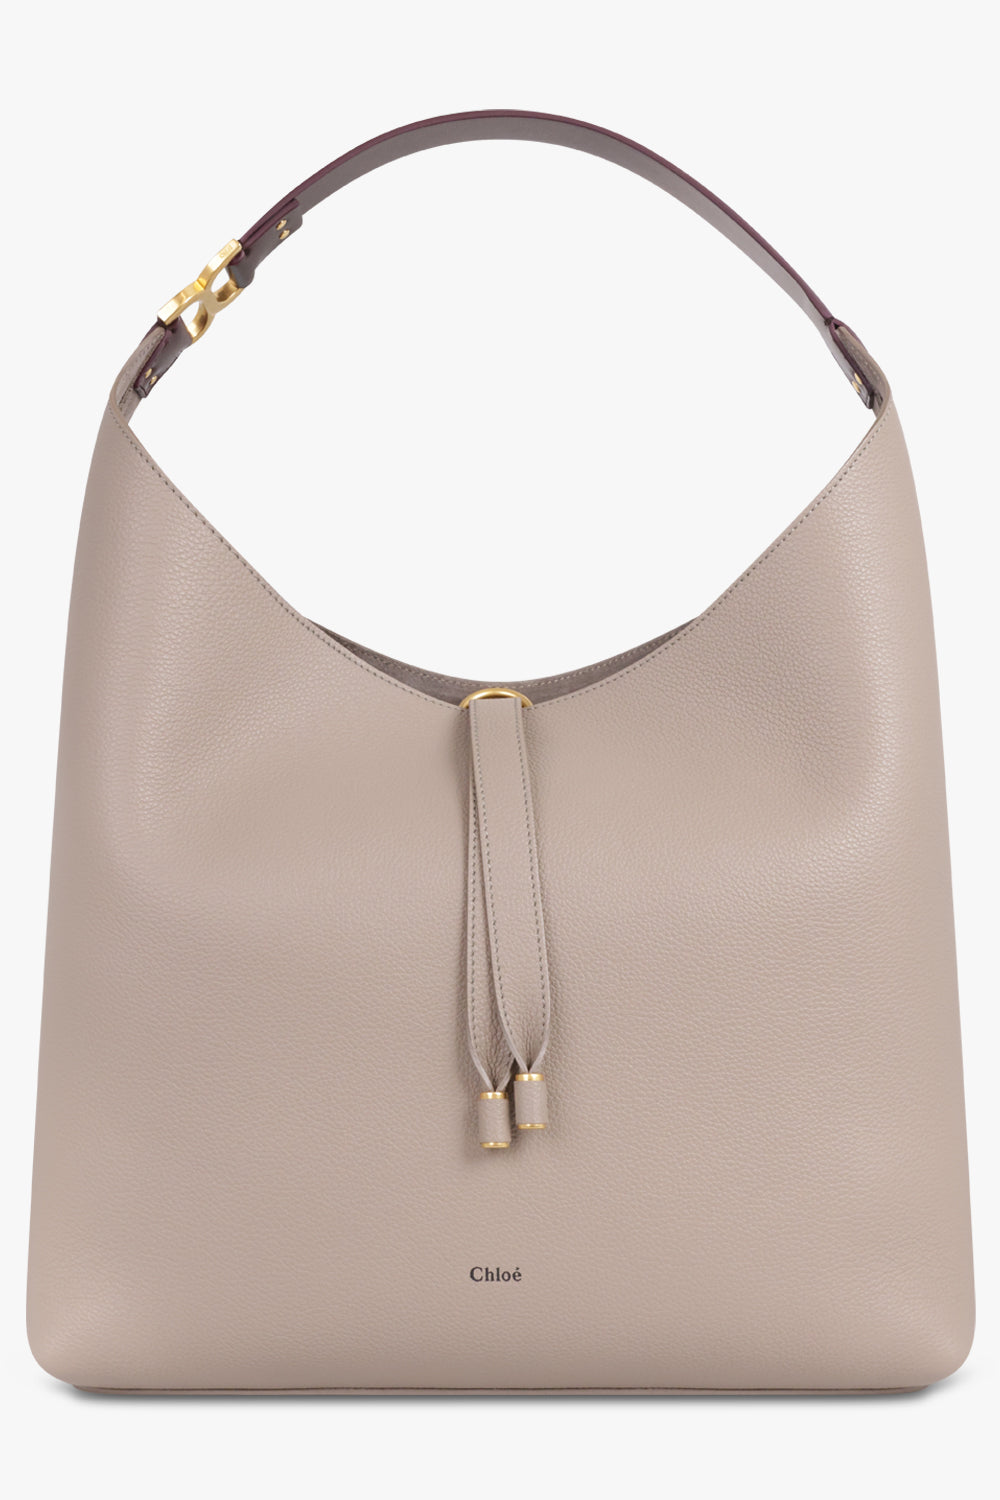 The Best Designer Tote Bags For Work | POPSUGAR Fashion UK